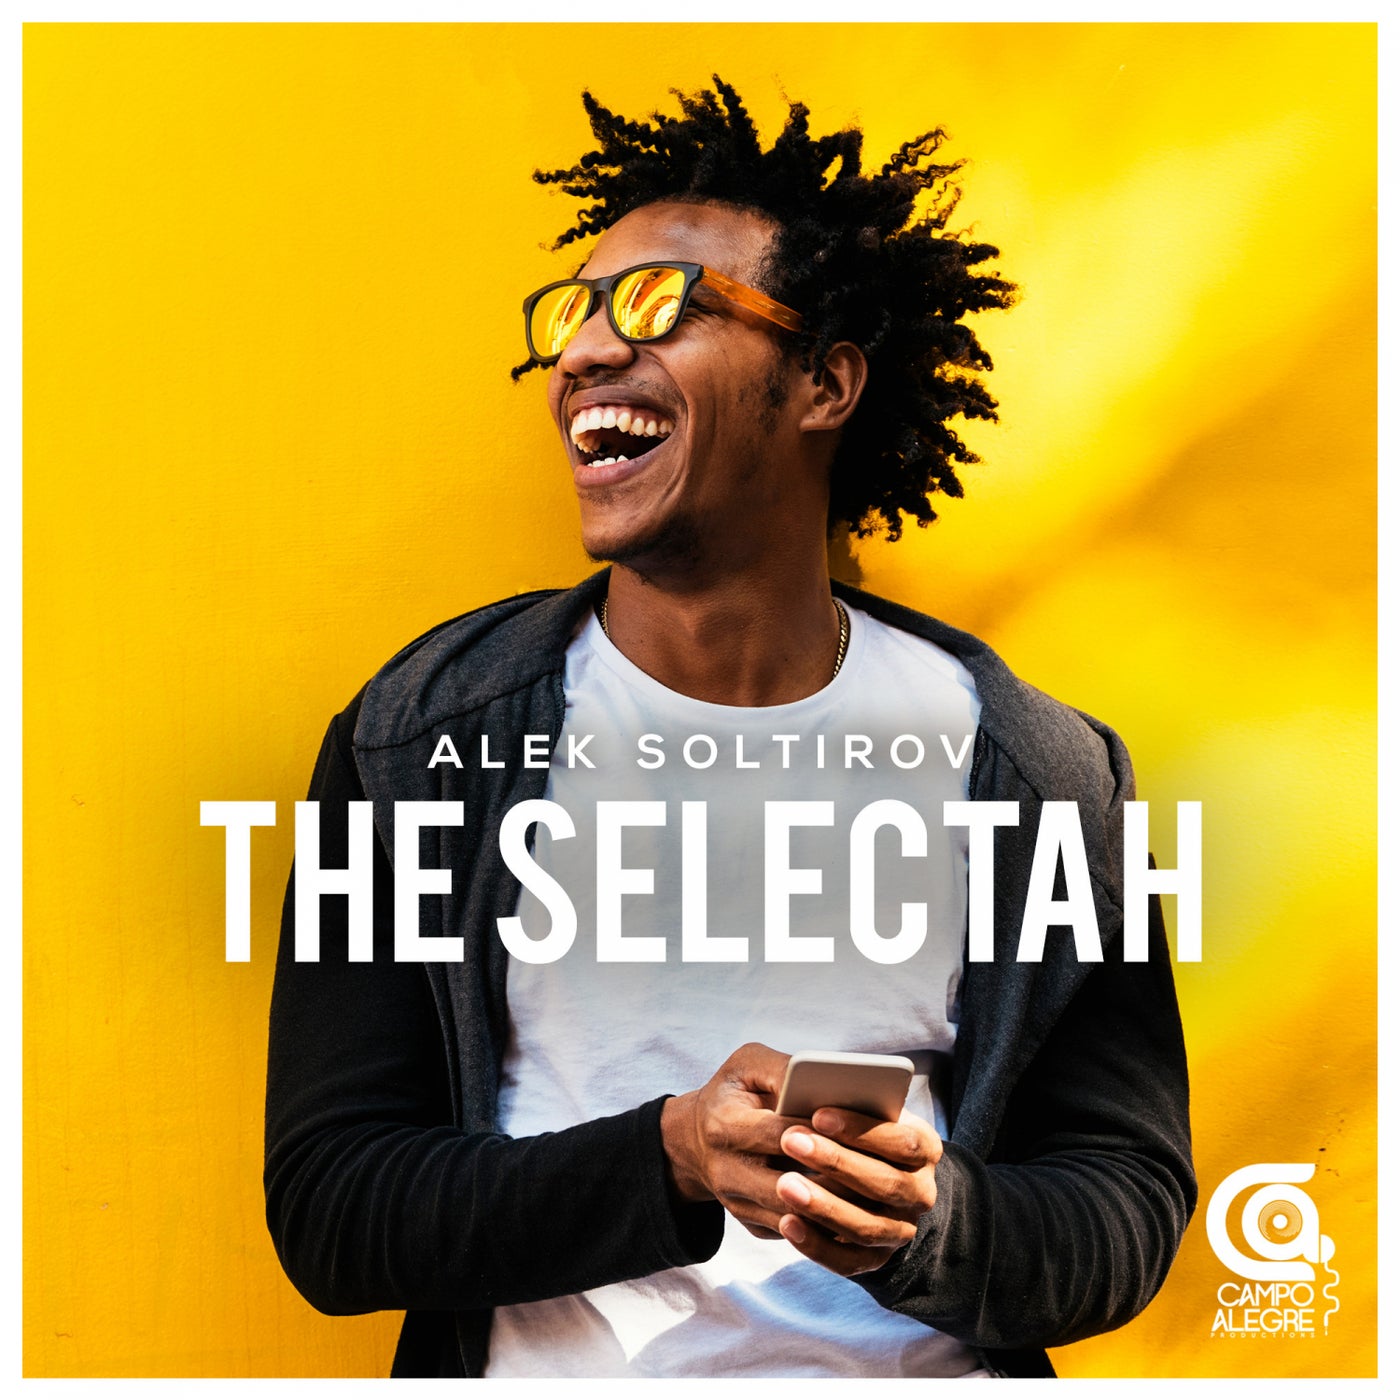 The Selectah